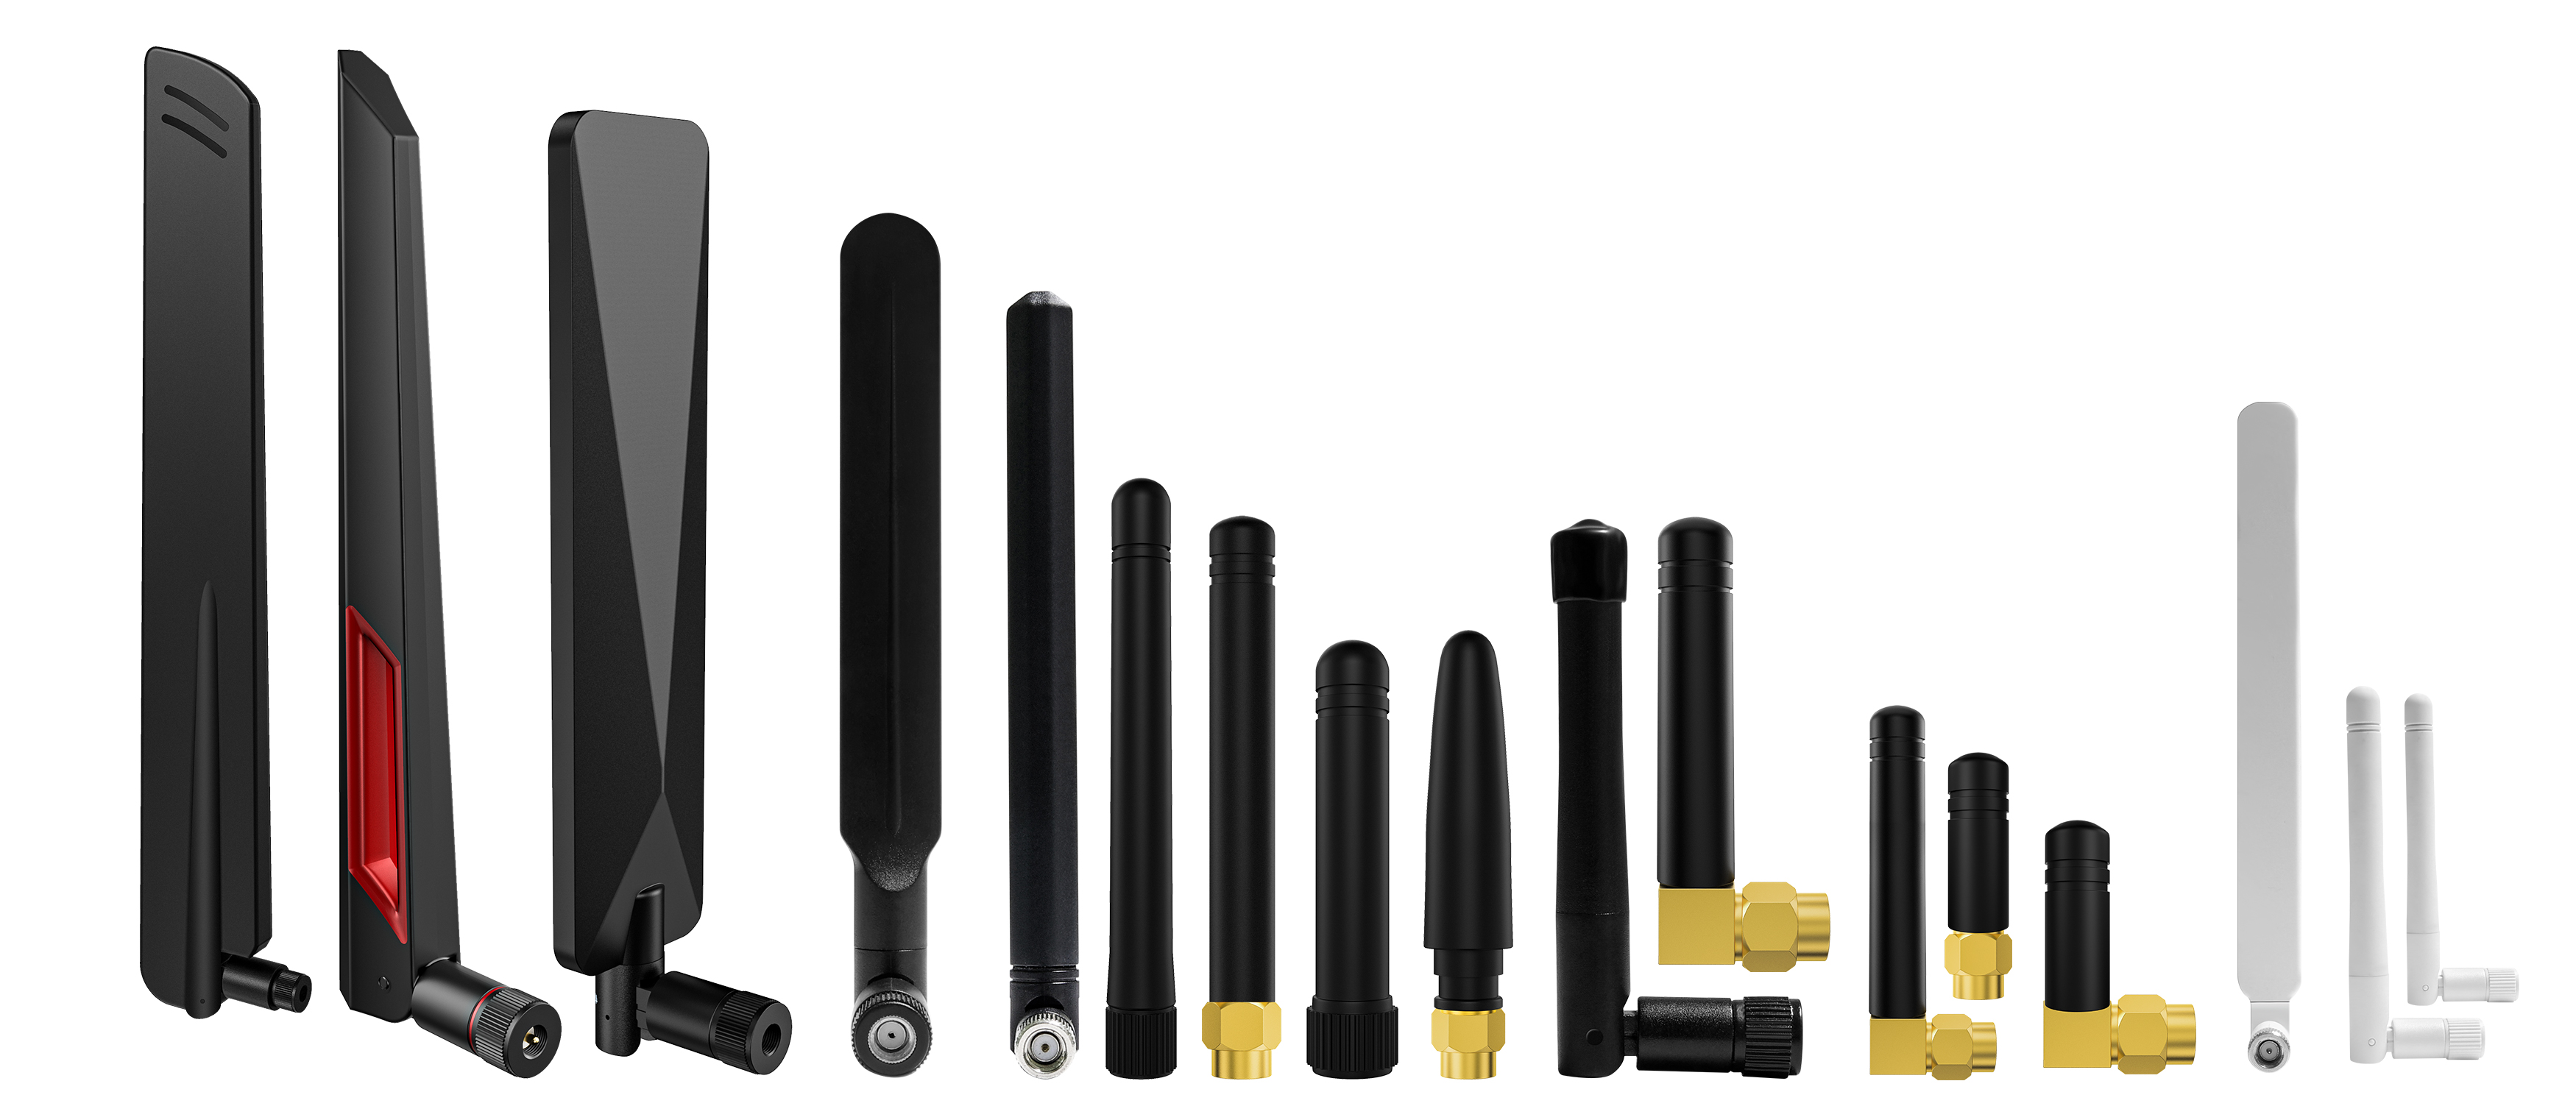 Banyak jenis antena getah untuk wifi 2g 3g 4g 5g